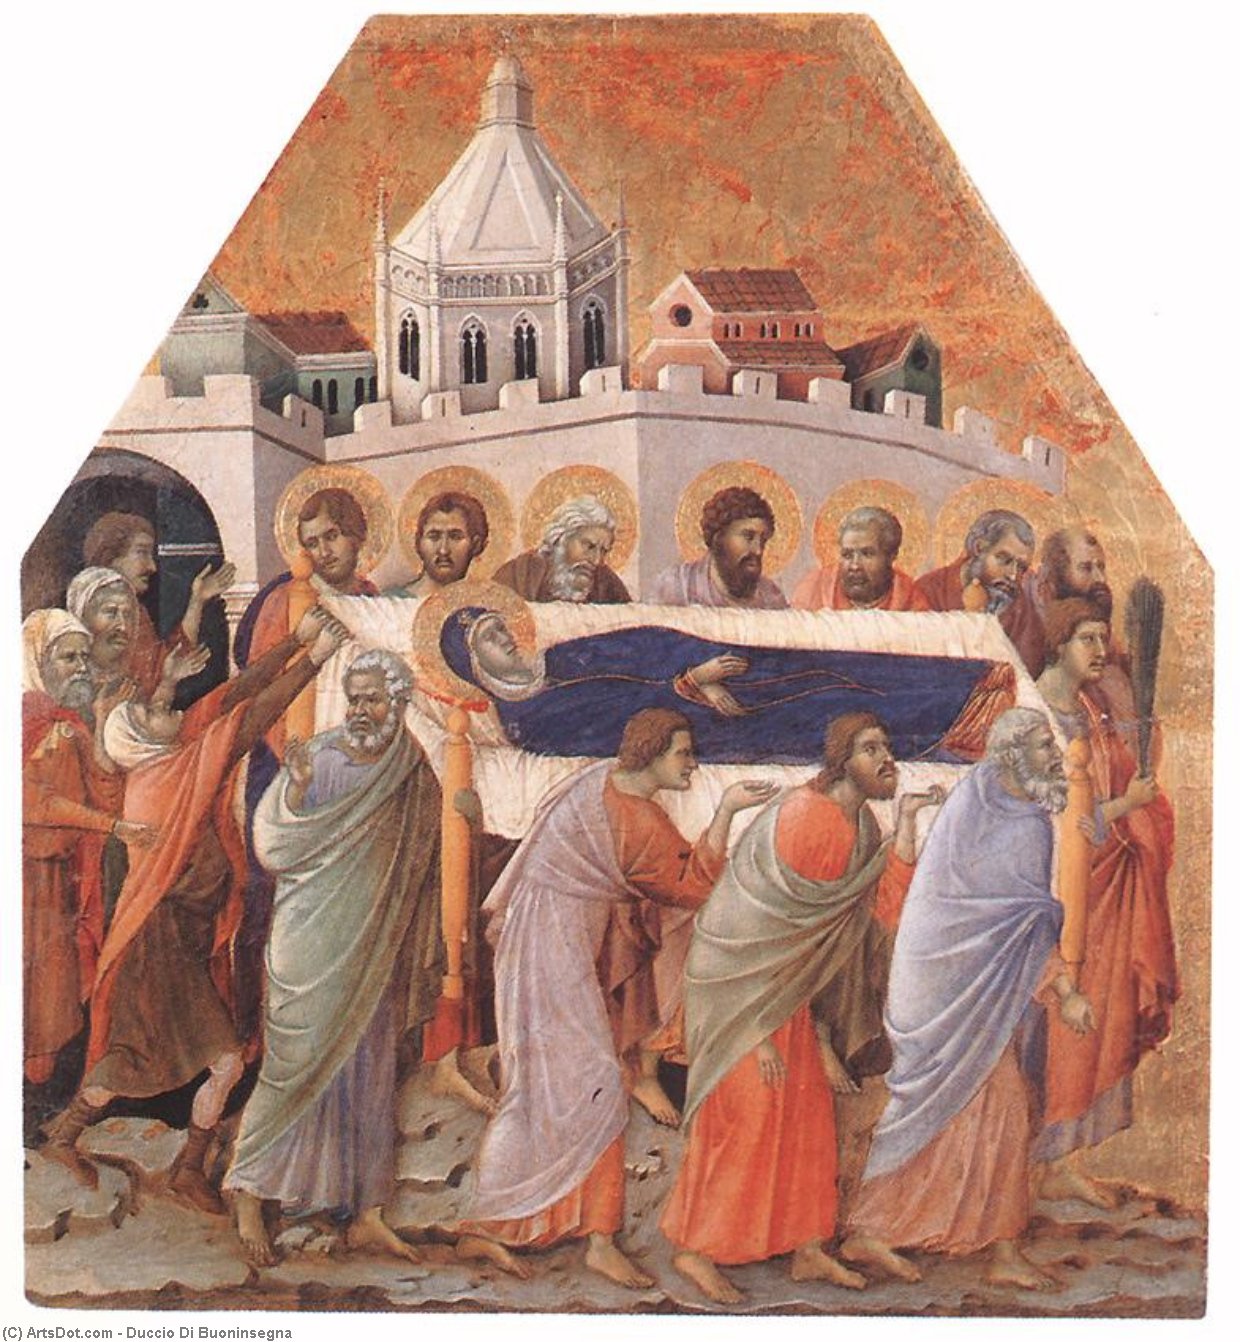 WikiOO.org - Encyclopedia of Fine Arts - Lukisan, Artwork Duccio Di Buoninsegna - Funeral